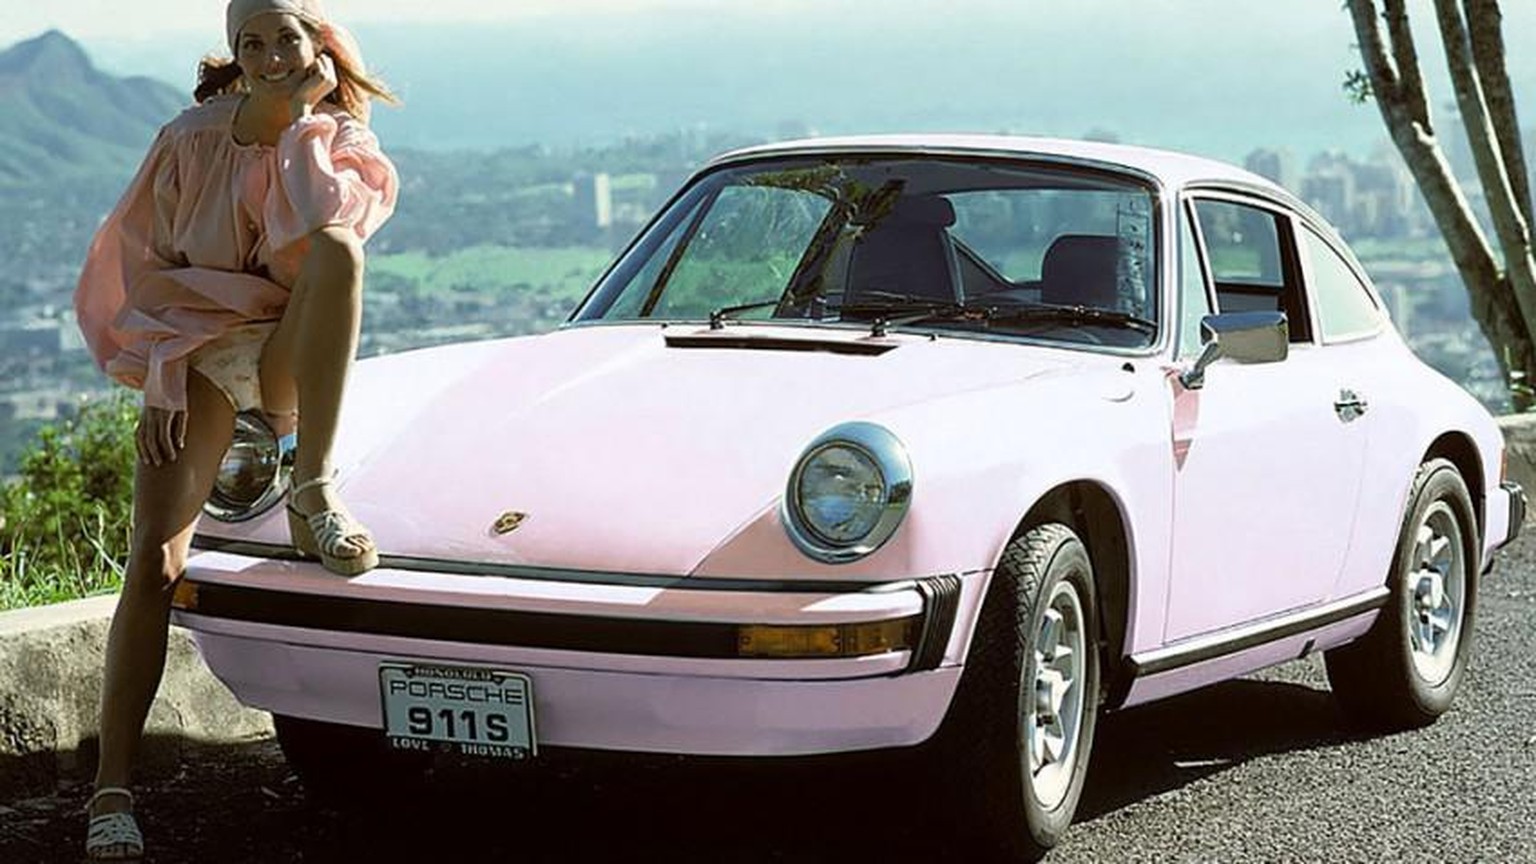 Marilyn Lange posiert mit dem rosa Porsche 911, den sie zum Titel «Playmate des Jahres 1975» erhält.